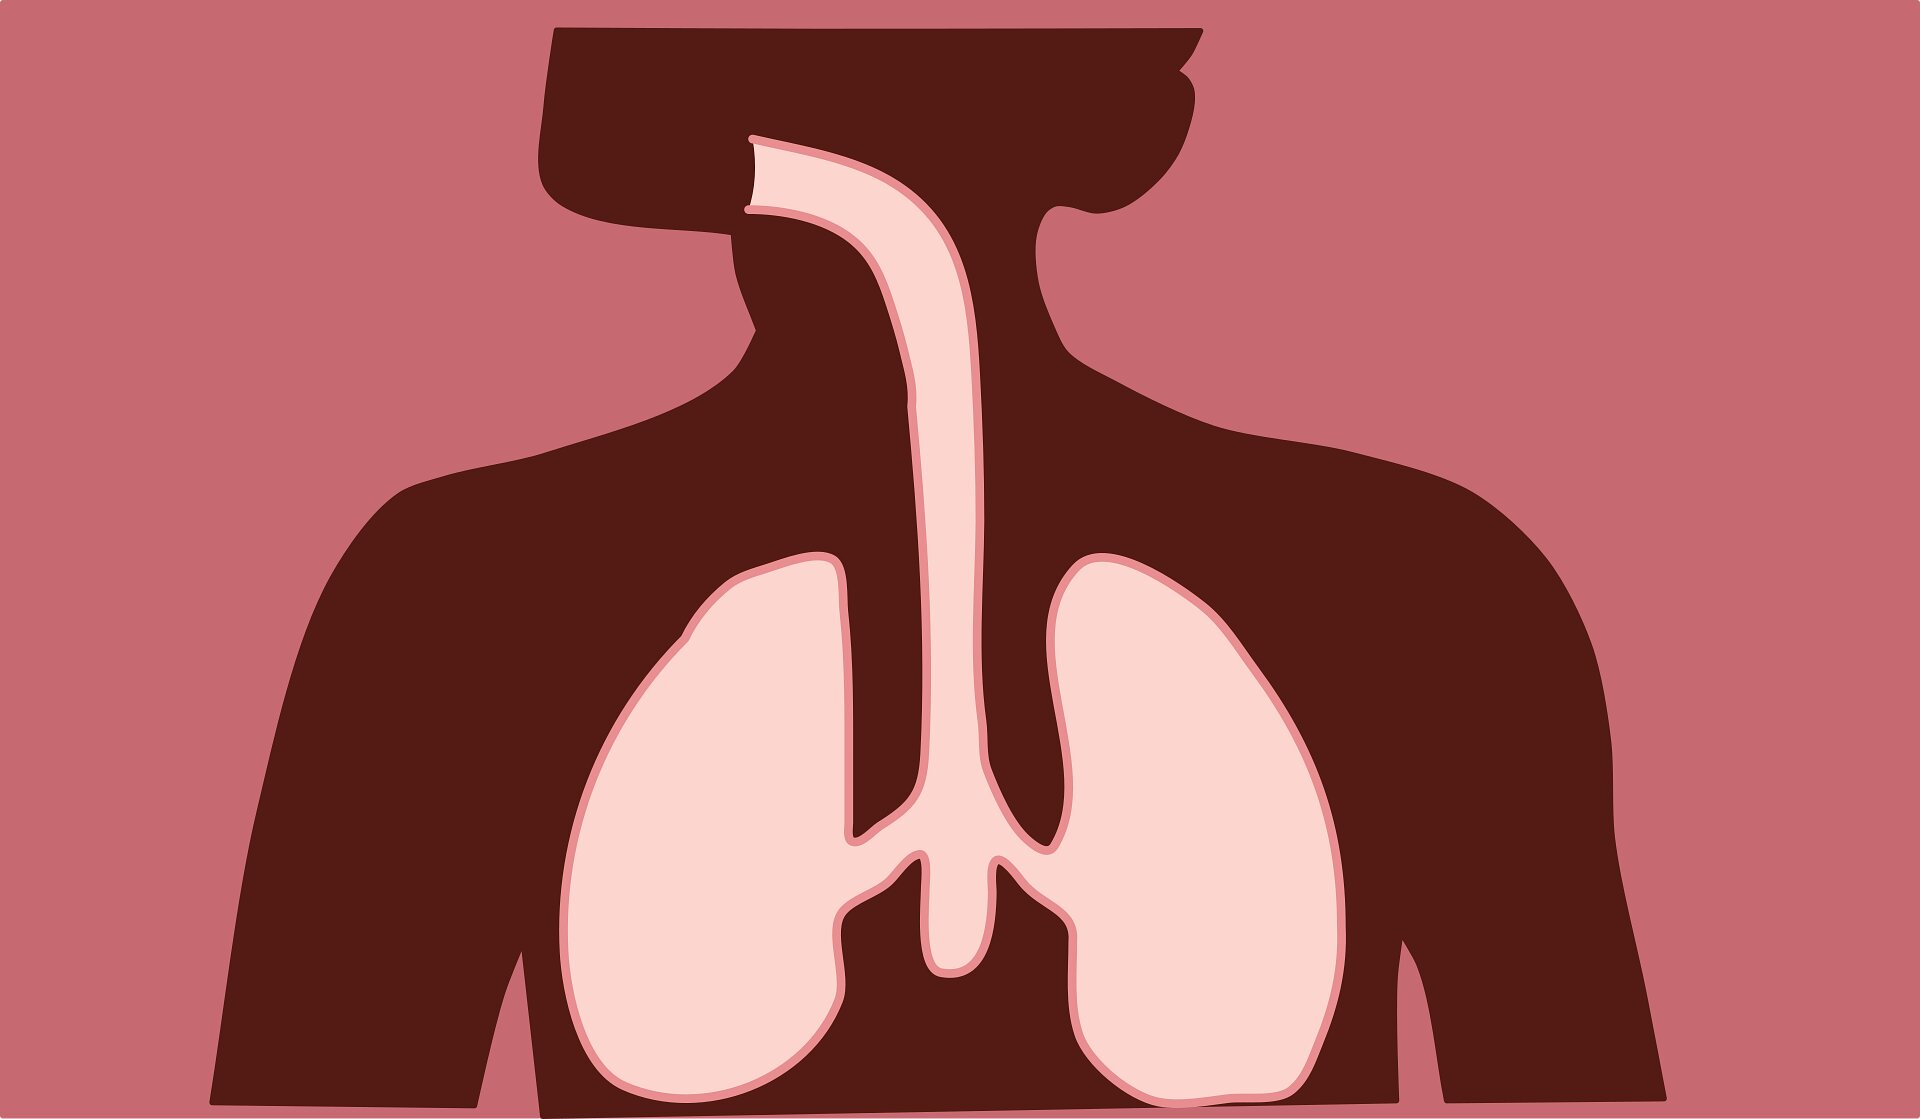 Les athlètes et le public pourraient bénéficier de nouvelles recherches sur la réduction des maladies des voies respiratoires supérieures